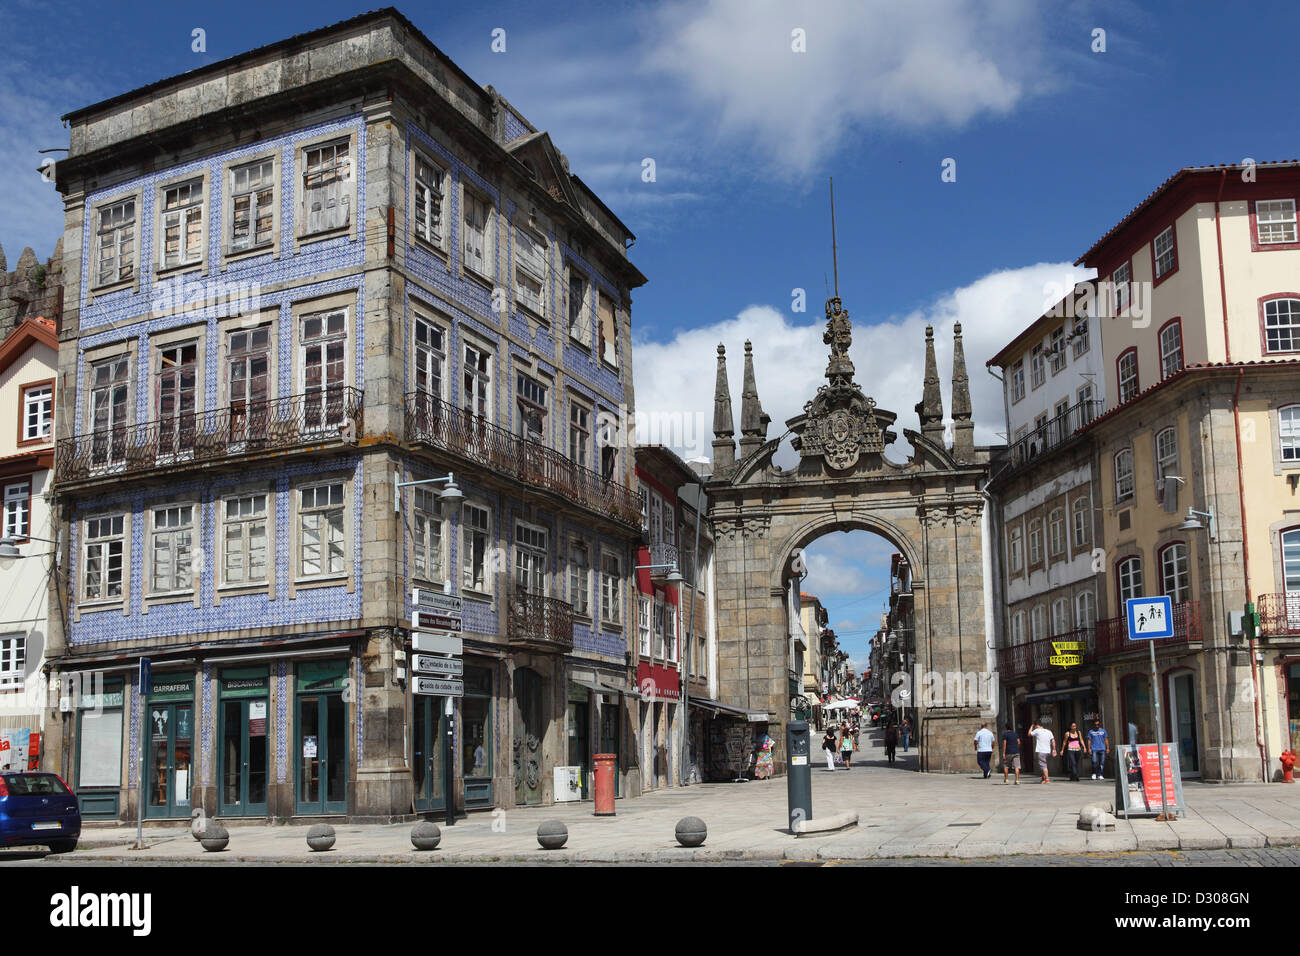 The Arco da Porta Nova, the Baroque city gate, in Braga, Portugal. Stock Photo